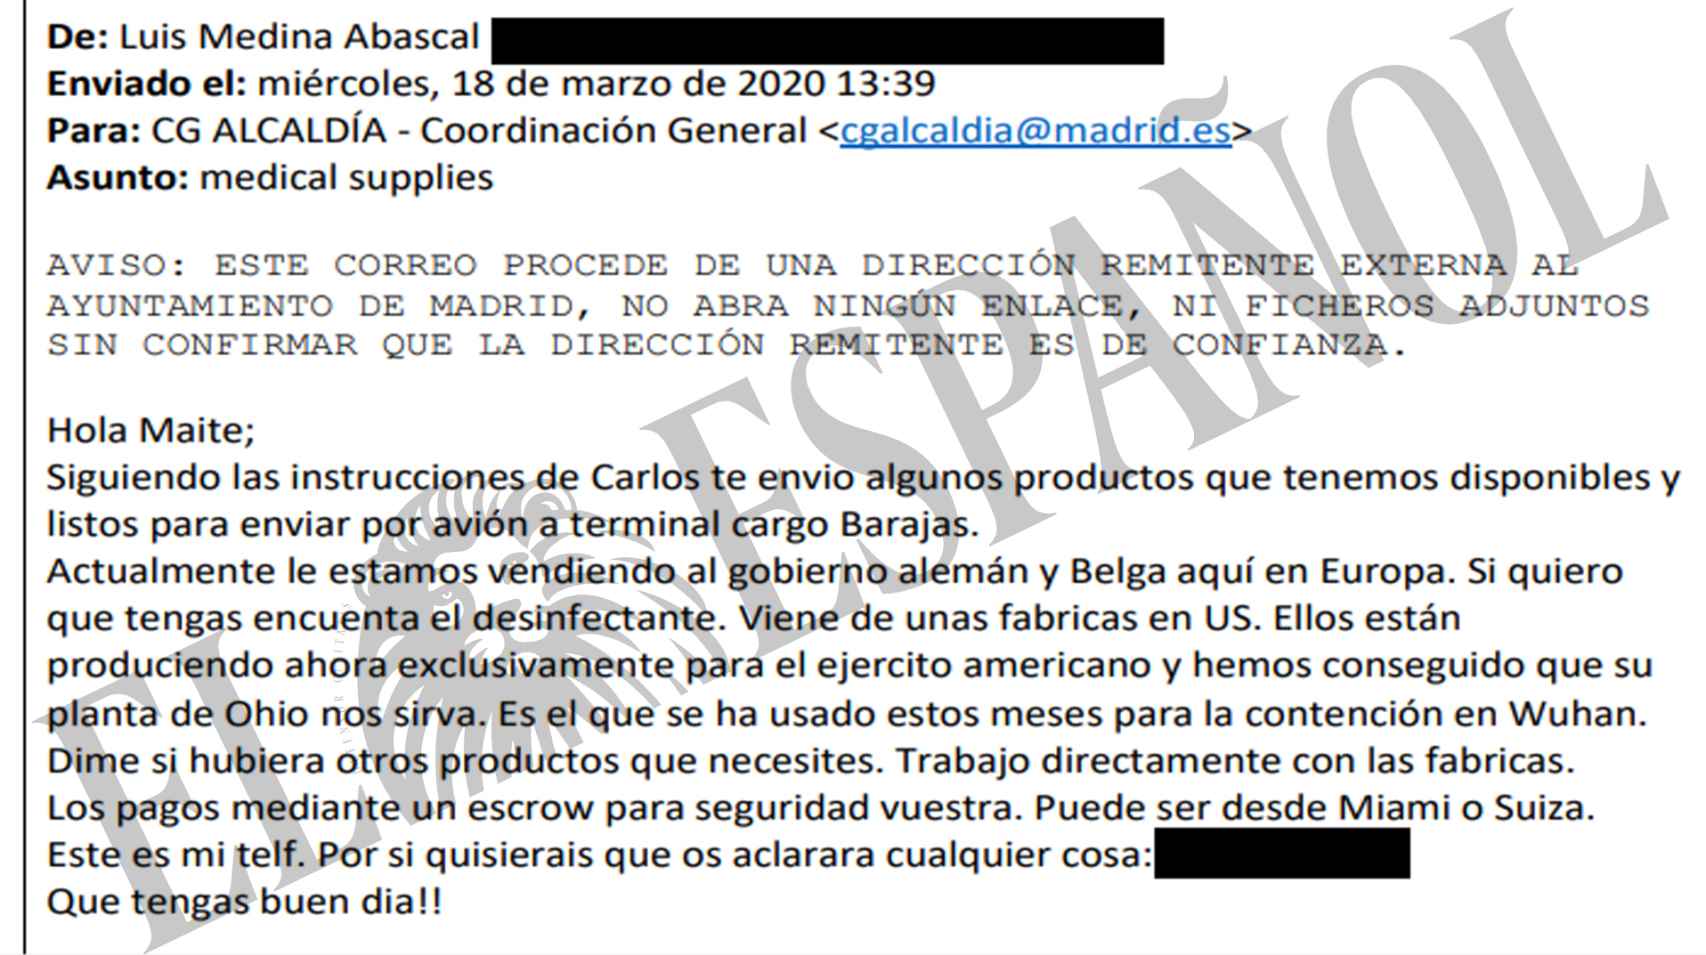 El primero de los correos enviado por Luis Medina a la Coordinación General de la Alcaldía de Madrid.